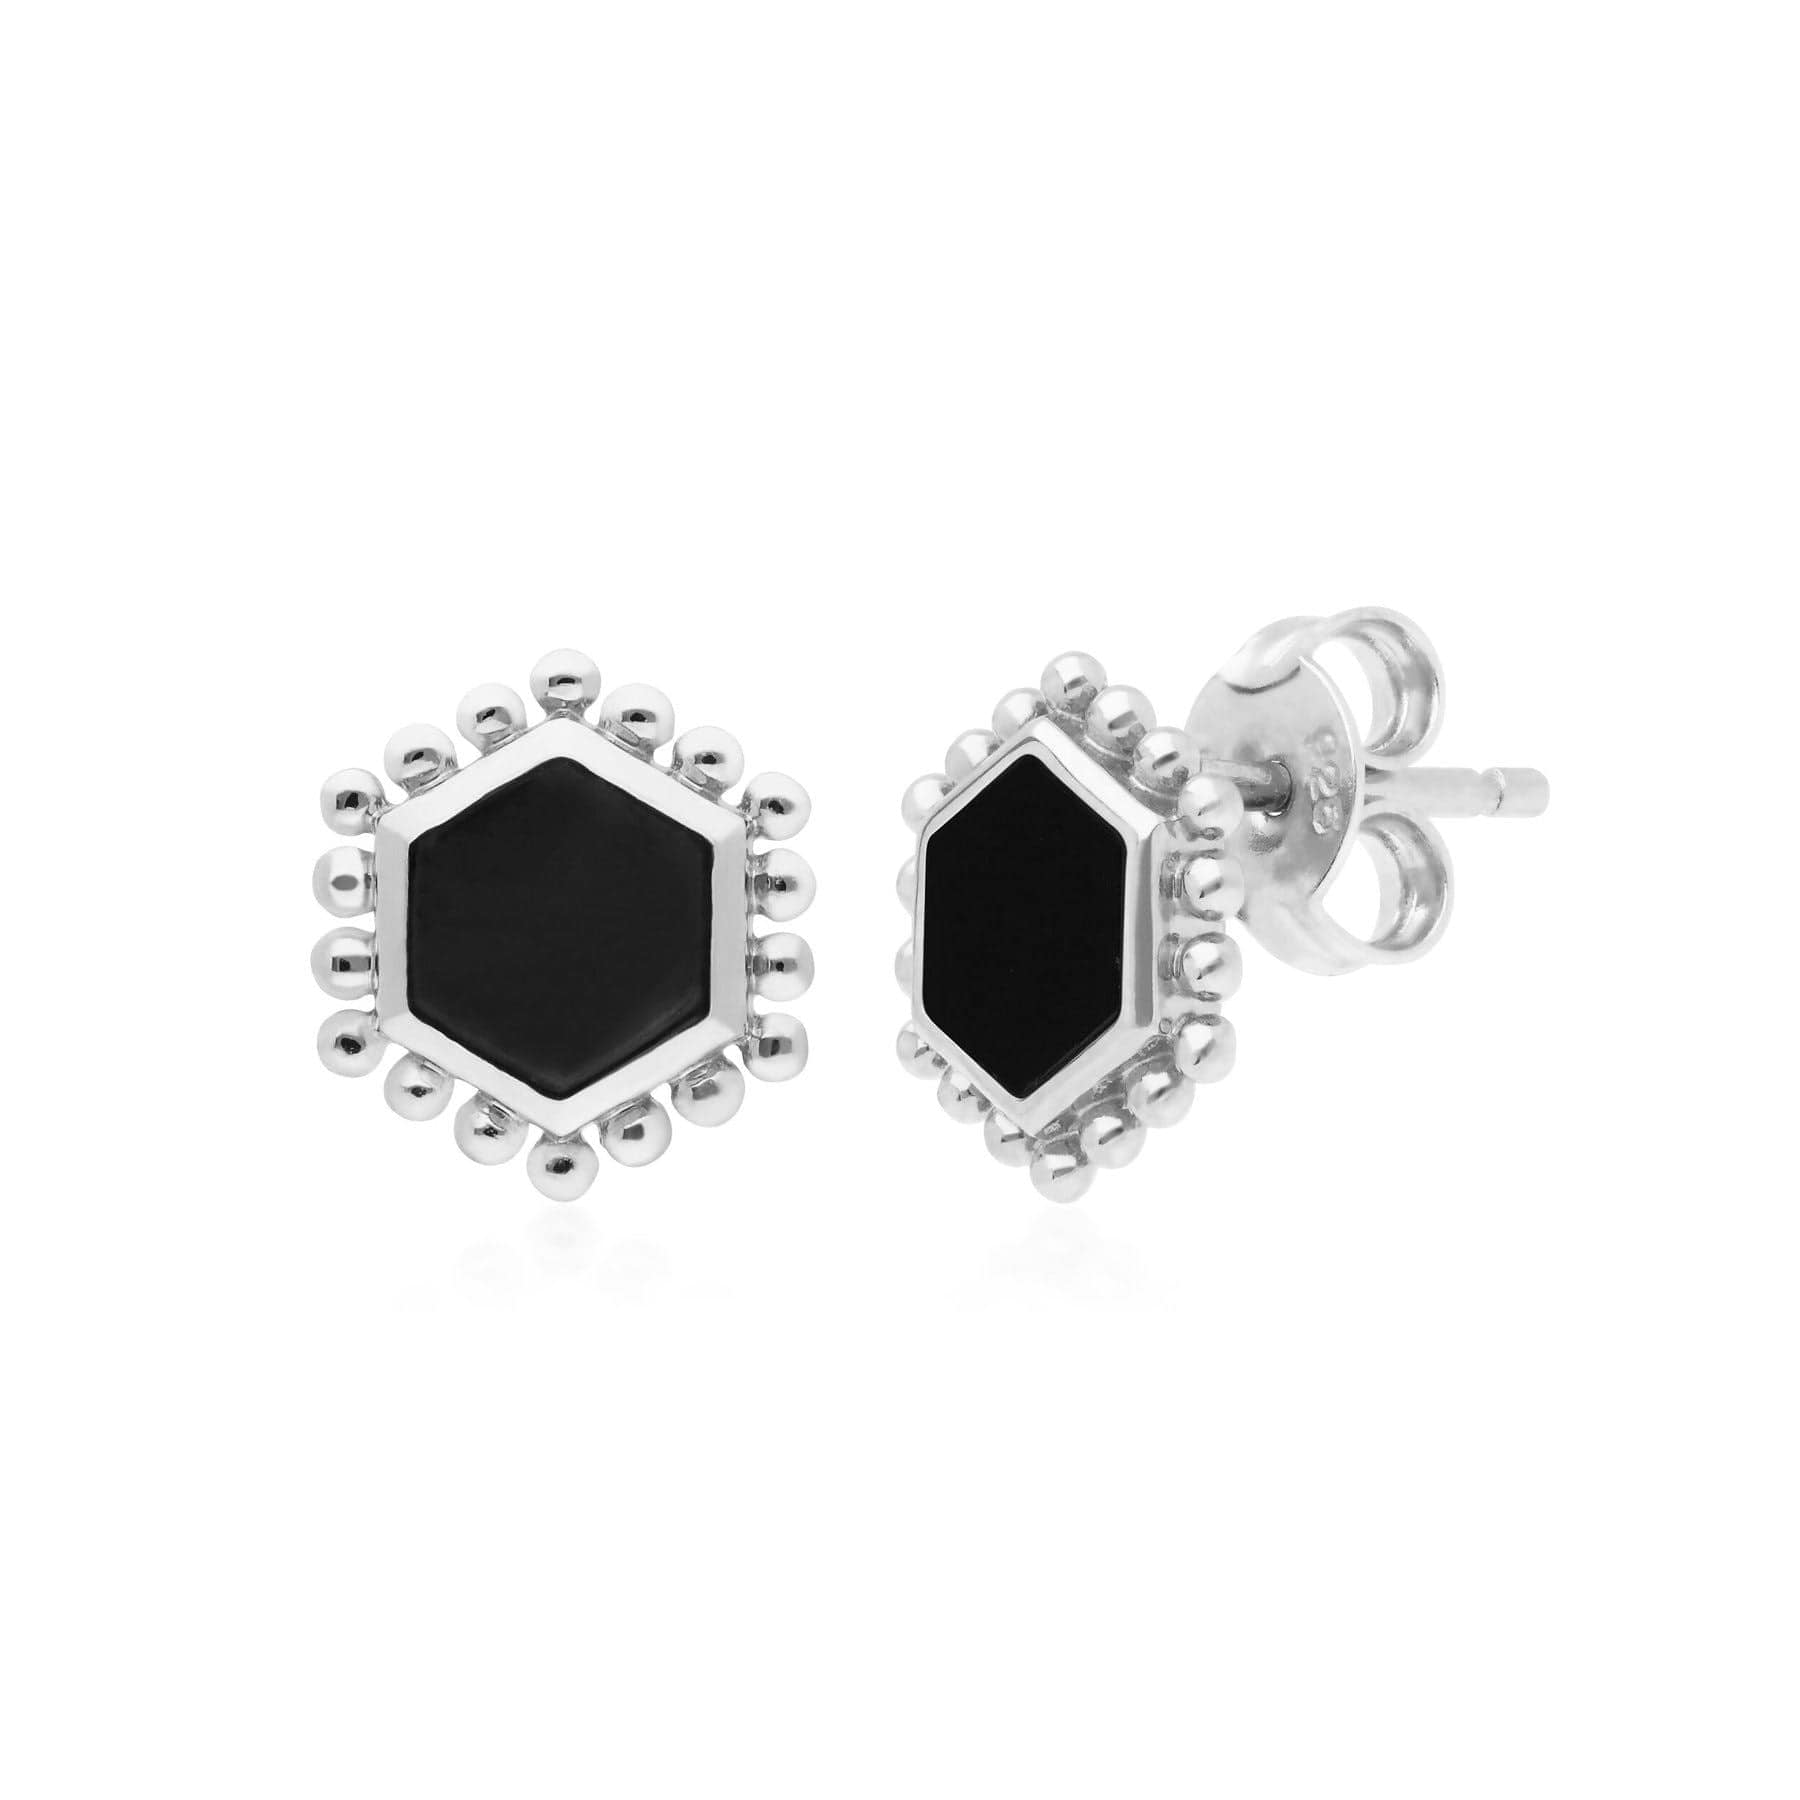 Image of Black Onyx Flat Slice Hex Stud Earrings in Sterling Silver